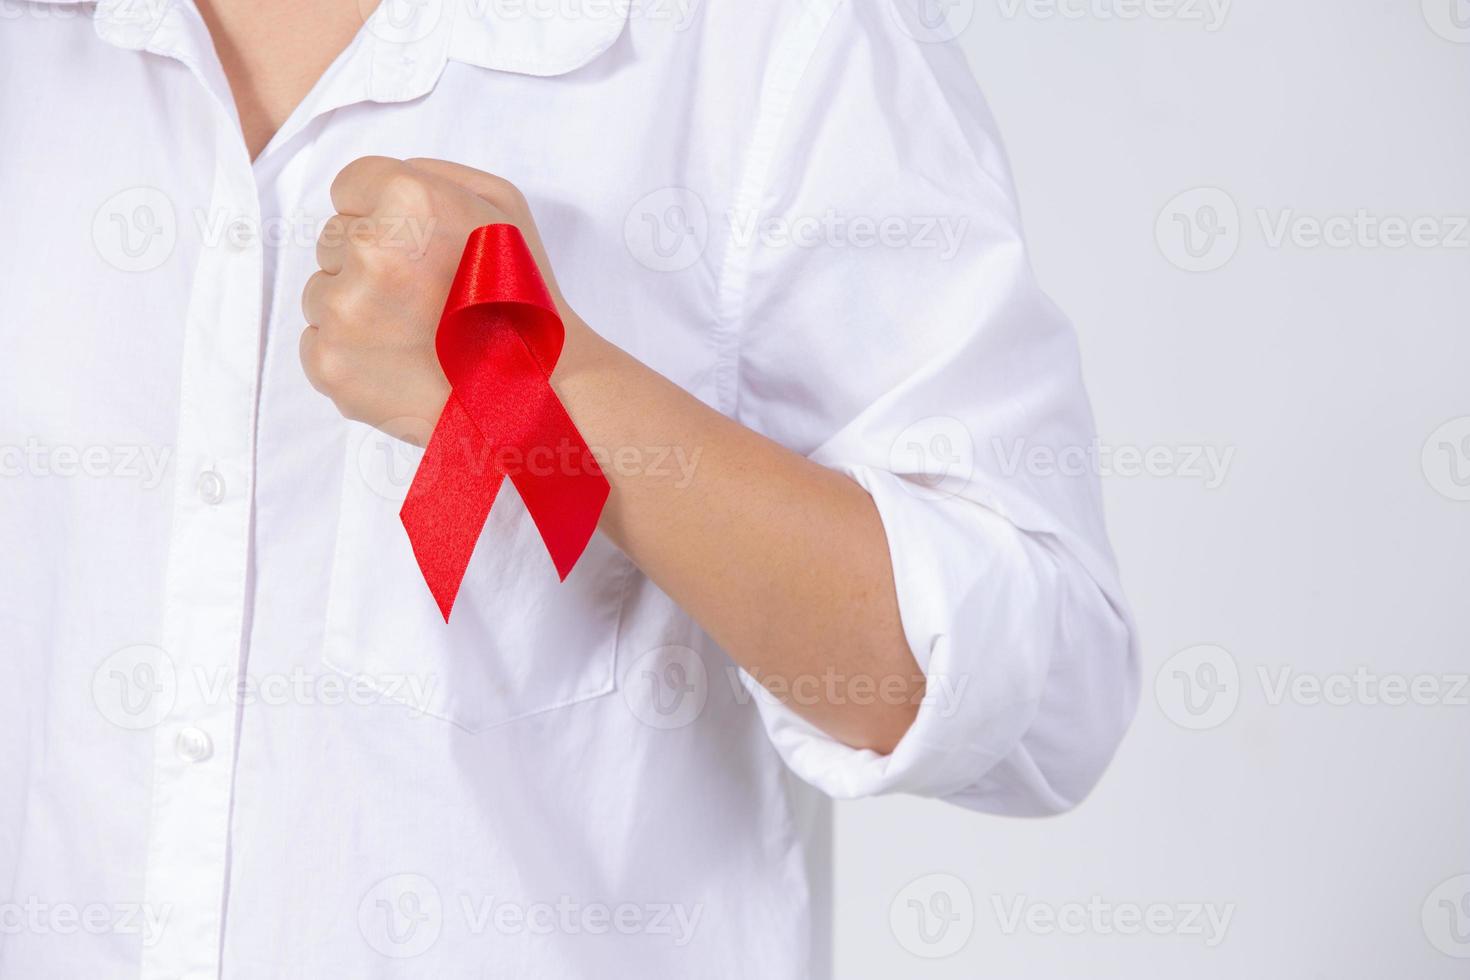 meisjeshanden met rood bewustzijnslint voor borstkanker en aids-bewustzijnslint foto